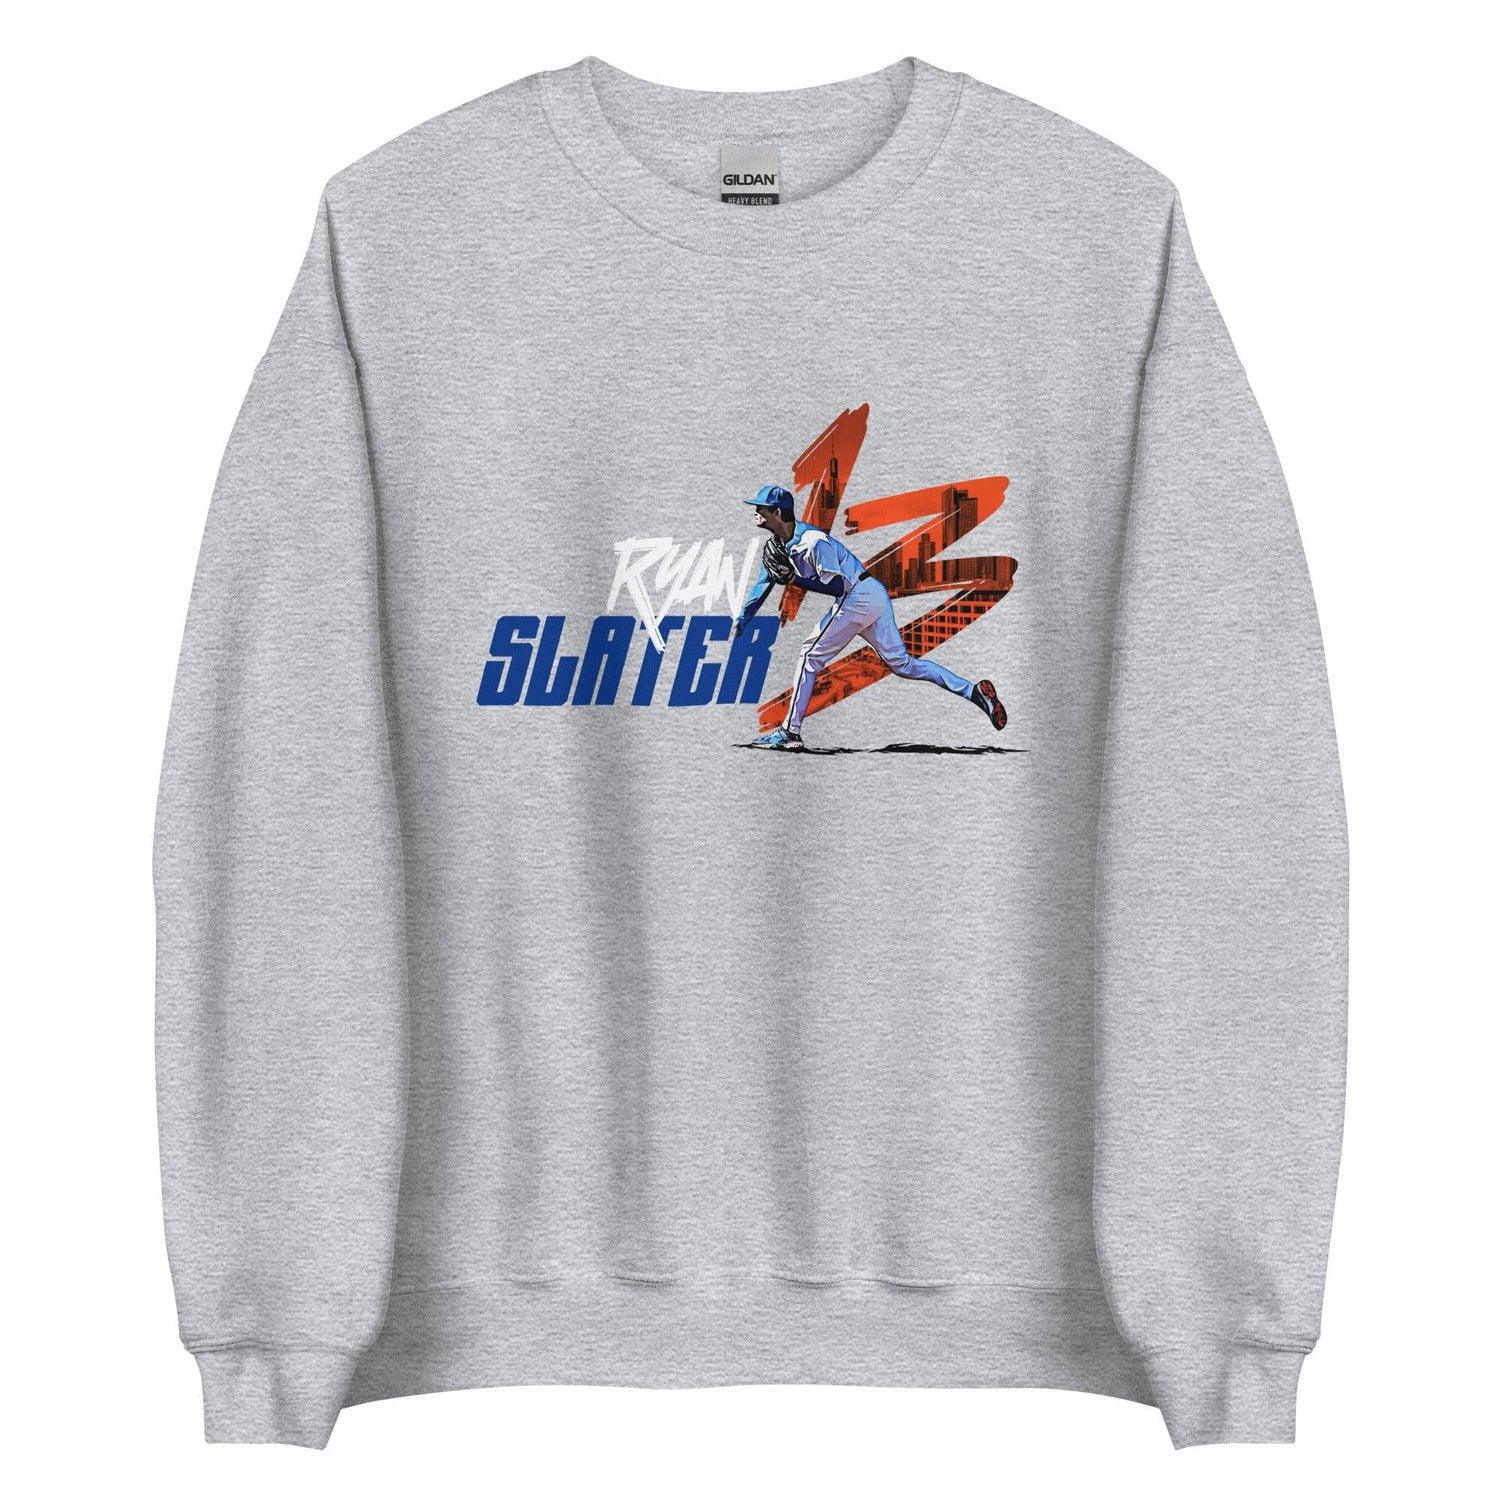 Ryan Slater "Gameday" Sweatshirt - Fan Arch